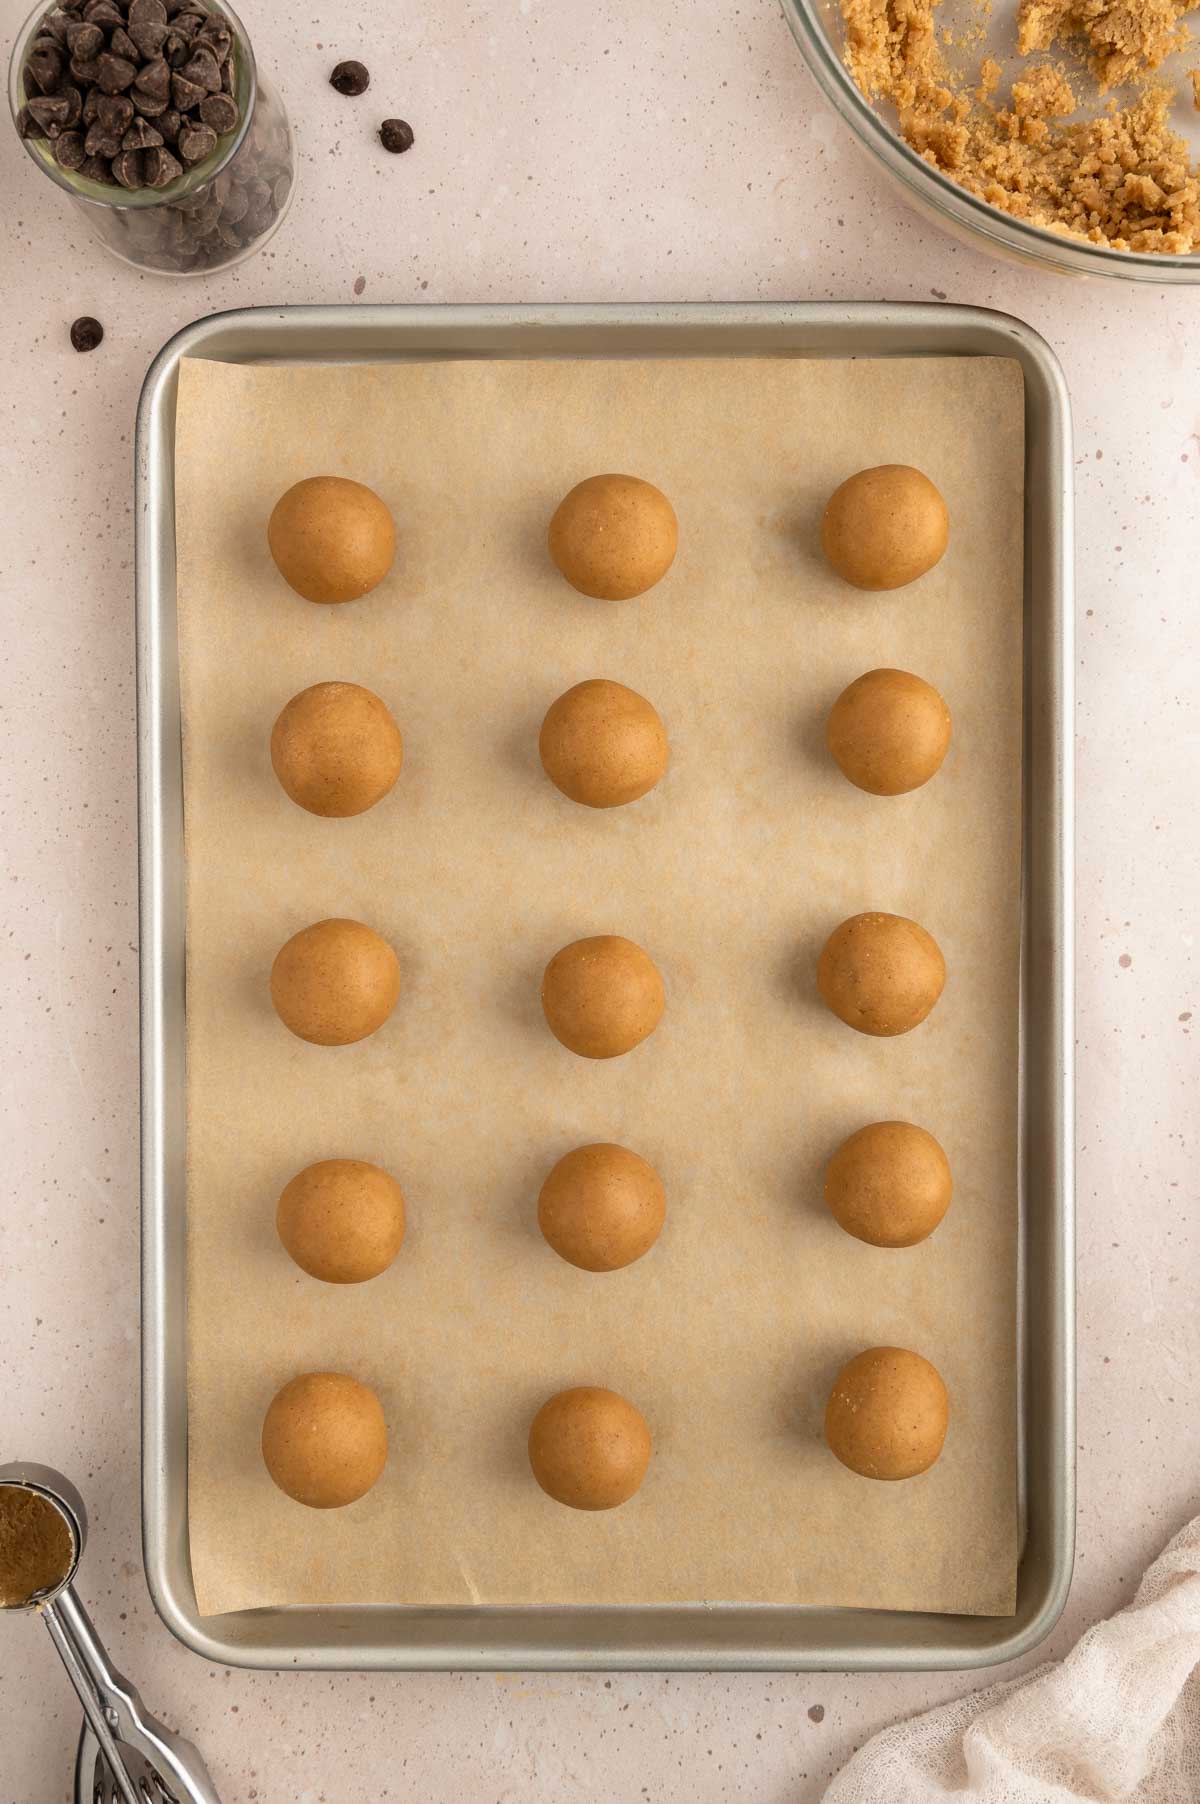 Cookie dough balls arranged on a baking sheet.